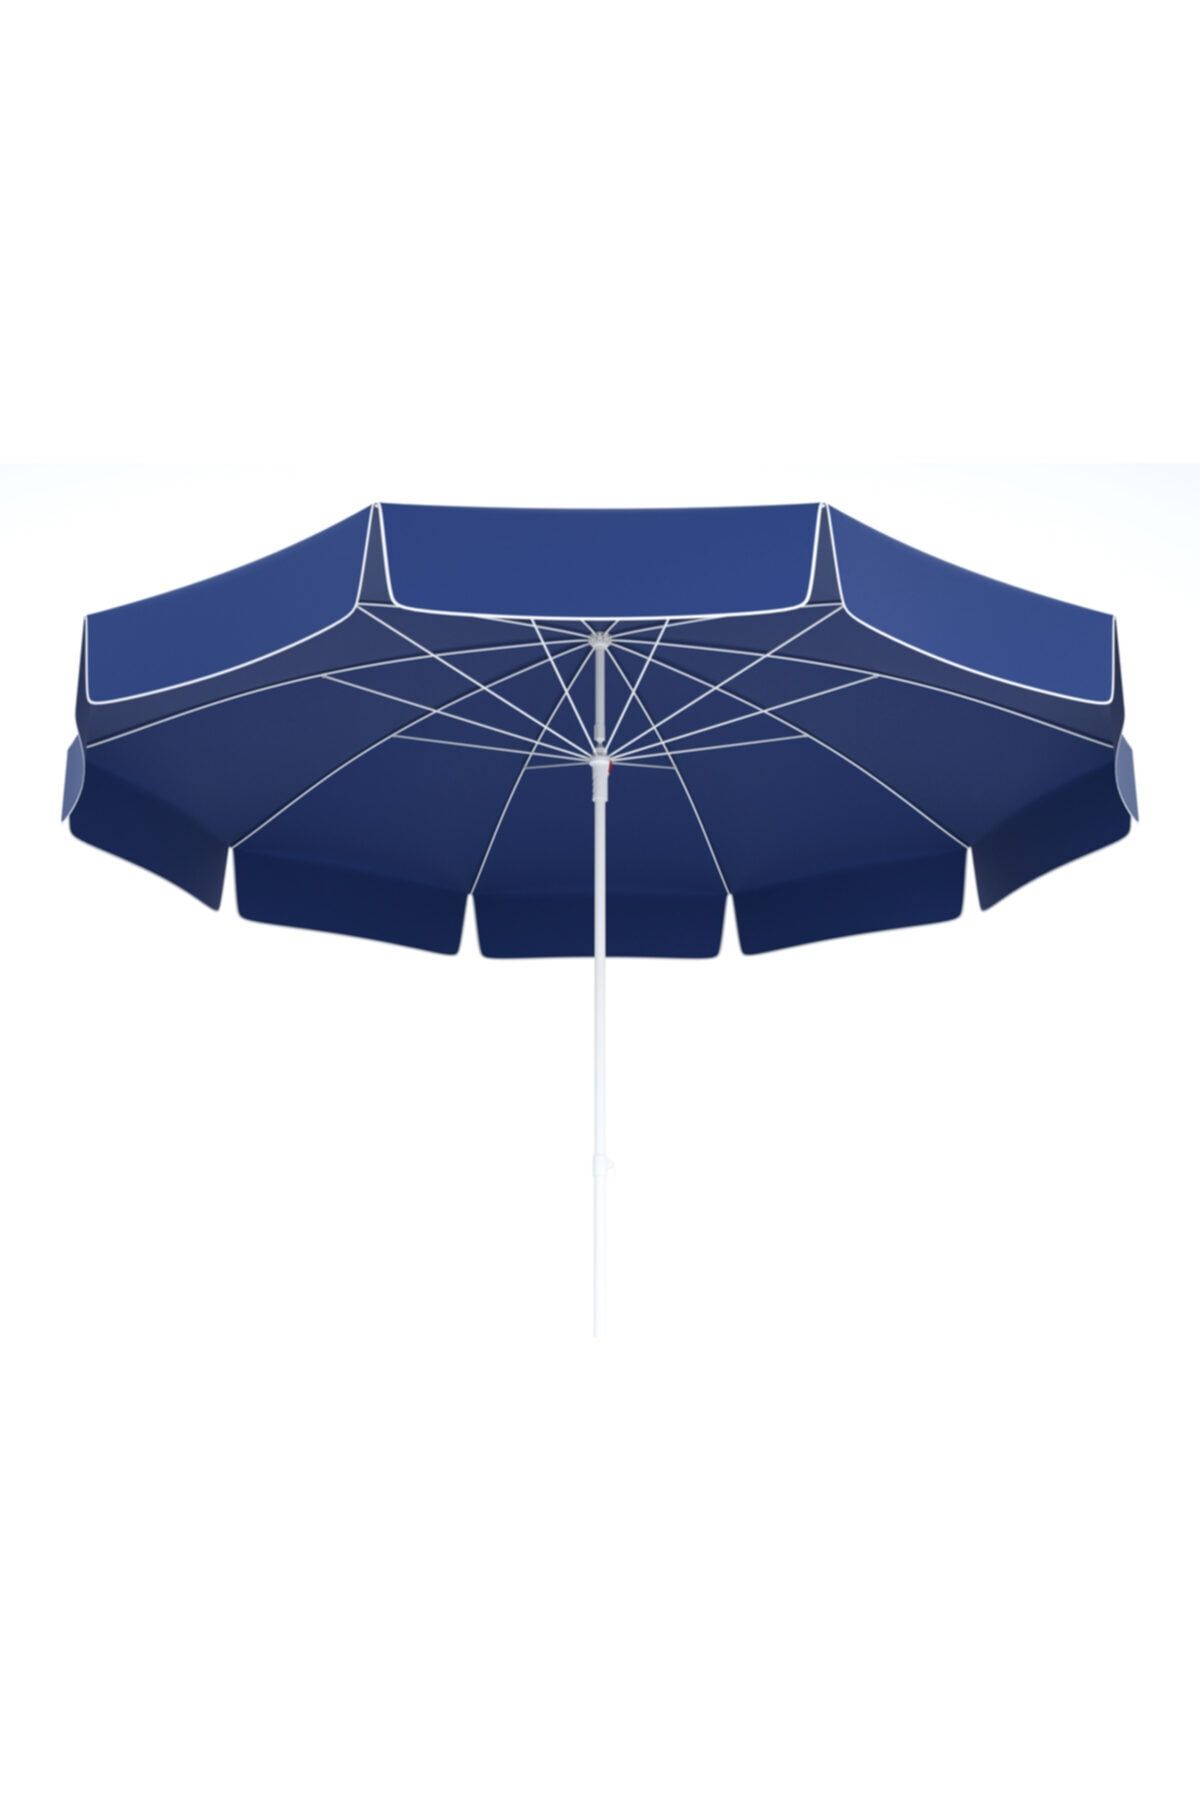 Tevalli Taşıma Çantalı Polyester Lacivert Balkon Plaj Şemsiyesi